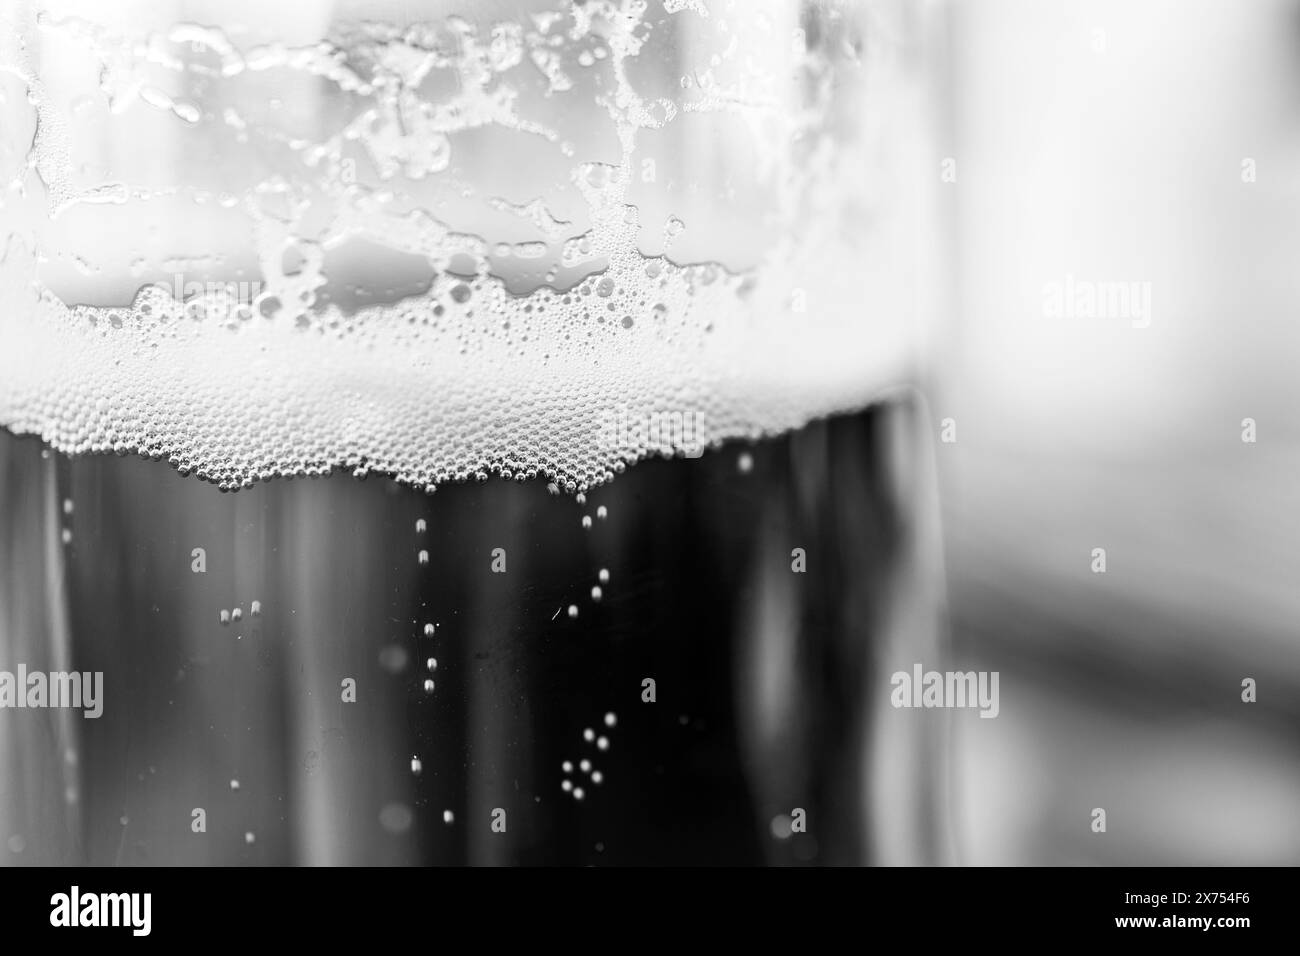 Gros plan des bulles dans un verre à bière Banque D'Images